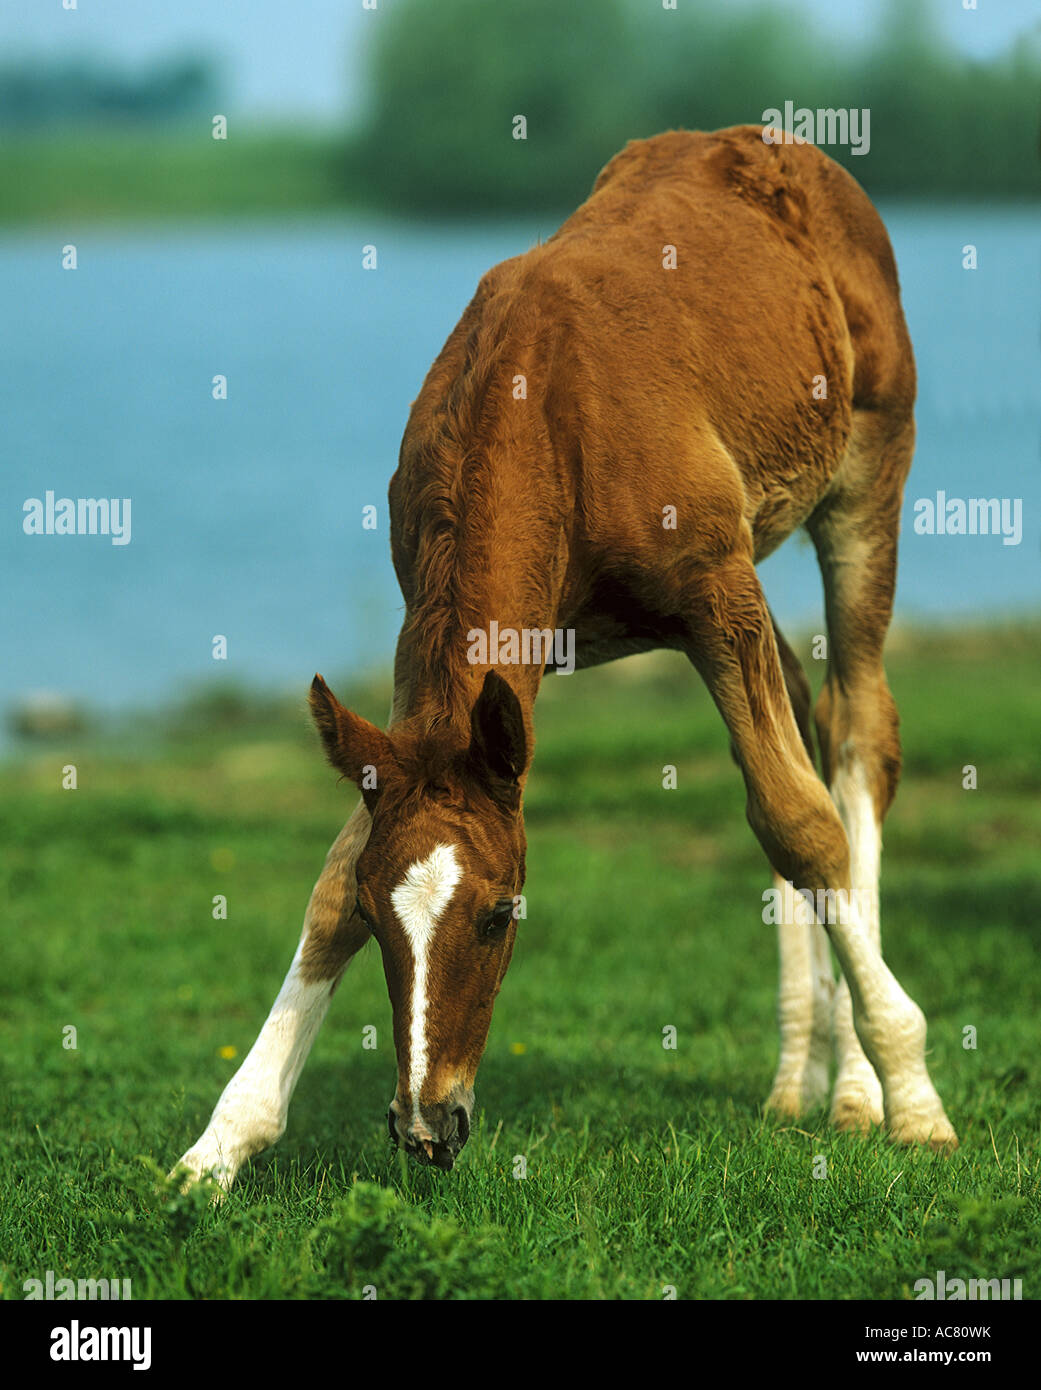 Gelderlander - foal standing on meadow Stock Photo